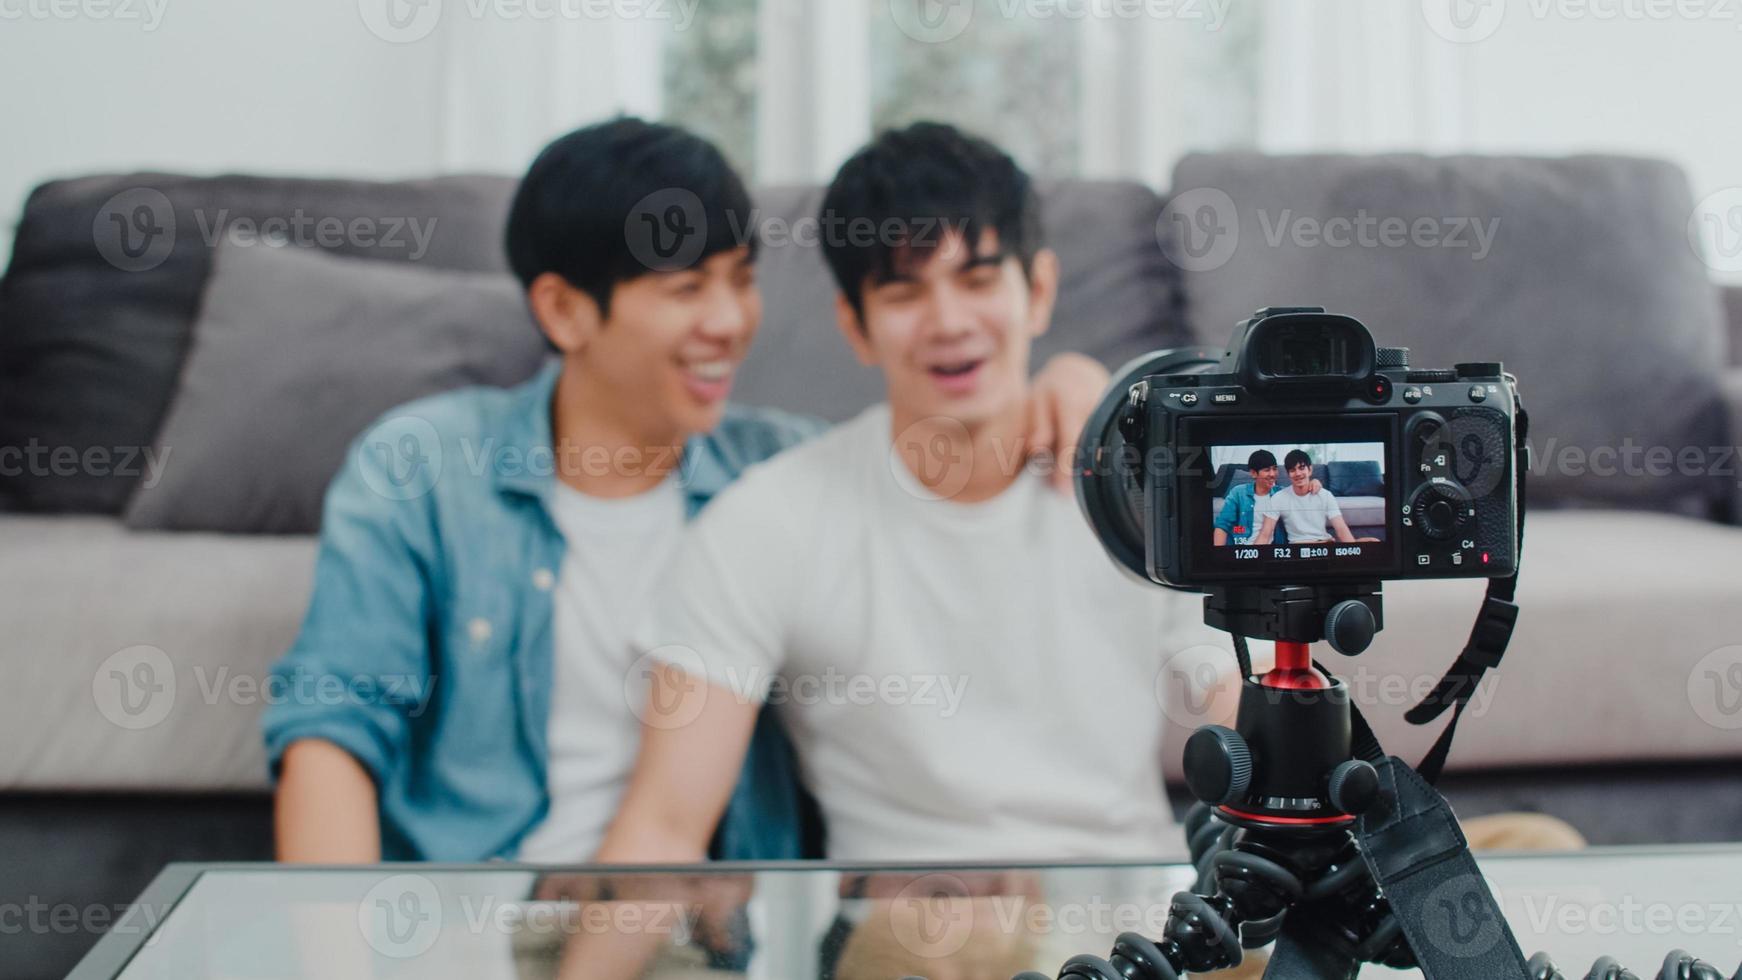 joven pareja gay asiática influyente pareja vlog en casa. adolescentes coreanos hombres lgbtq felices relajarse divertirse usando la cámara grabar video vlog cargar en las redes sociales mientras están acostados en el sofá en la sala de estar en el concepto de casa. foto